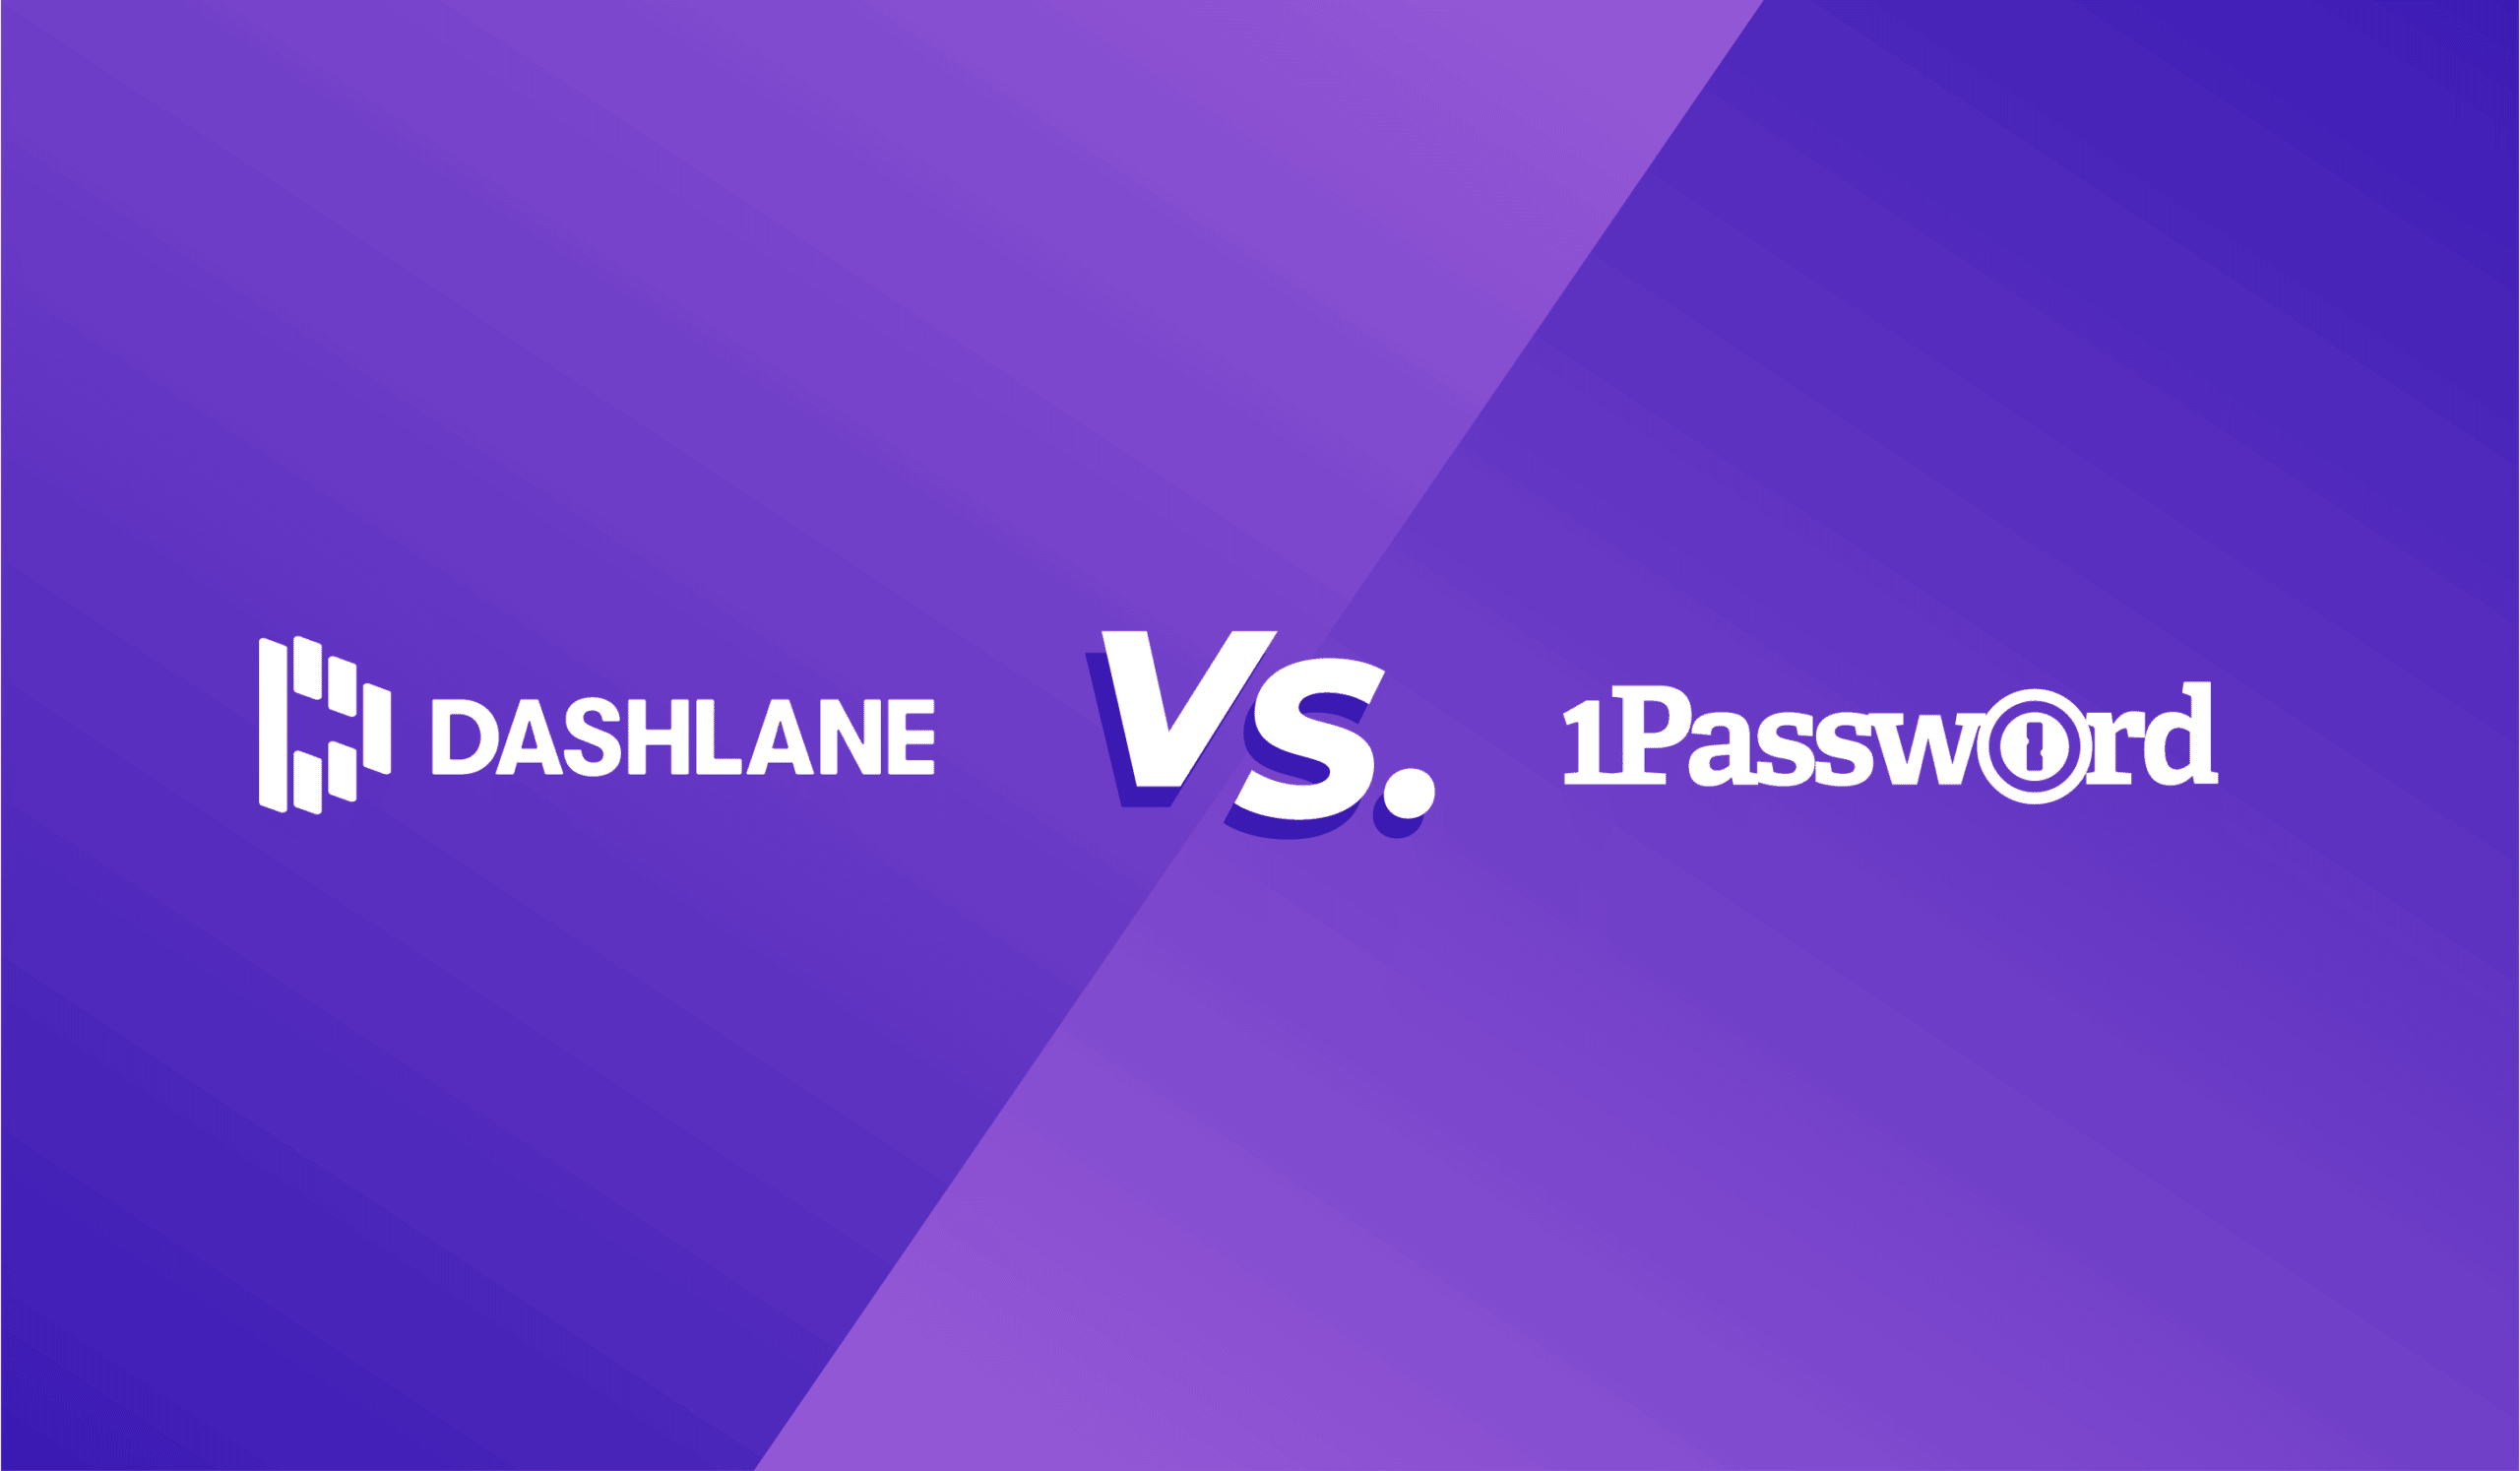 Dashlane versus 1Password comparison.